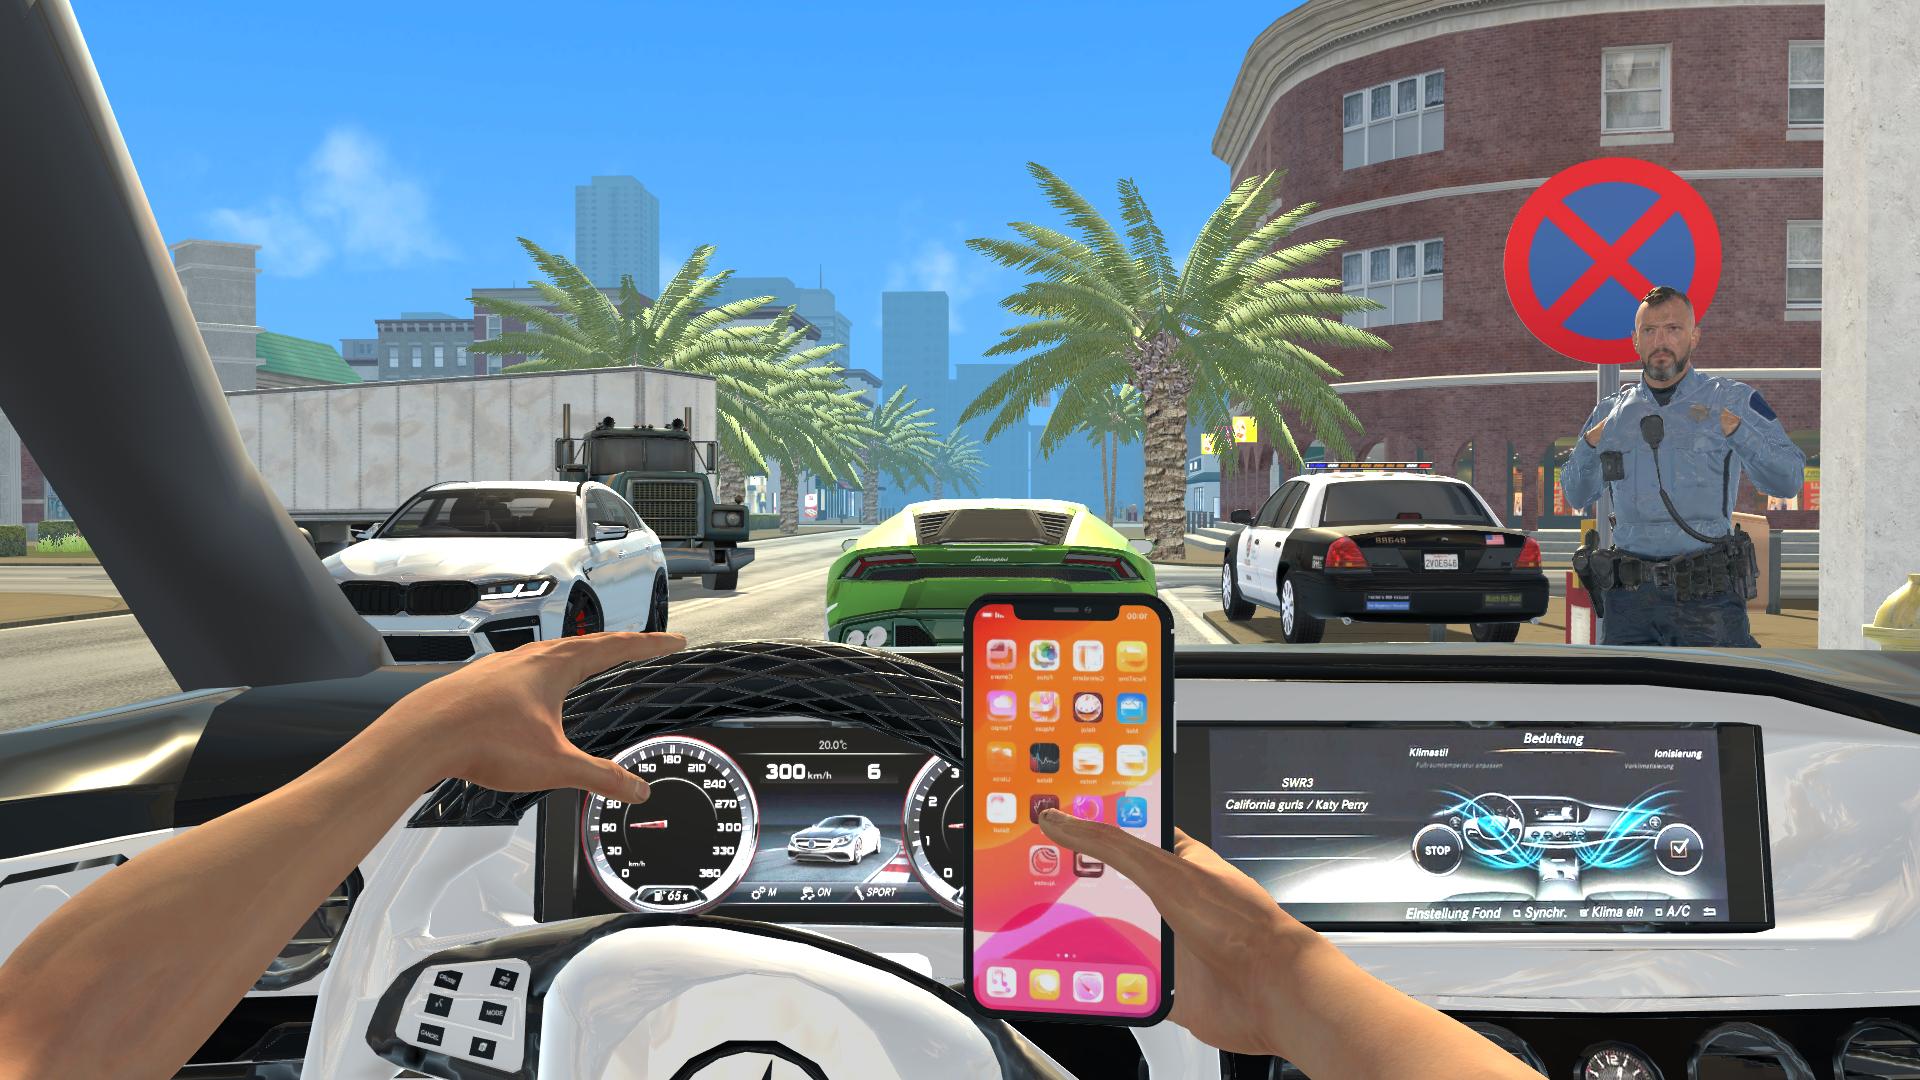 Extreme Car Driving Simulator (GameLoop) pour Windows - Télécharge